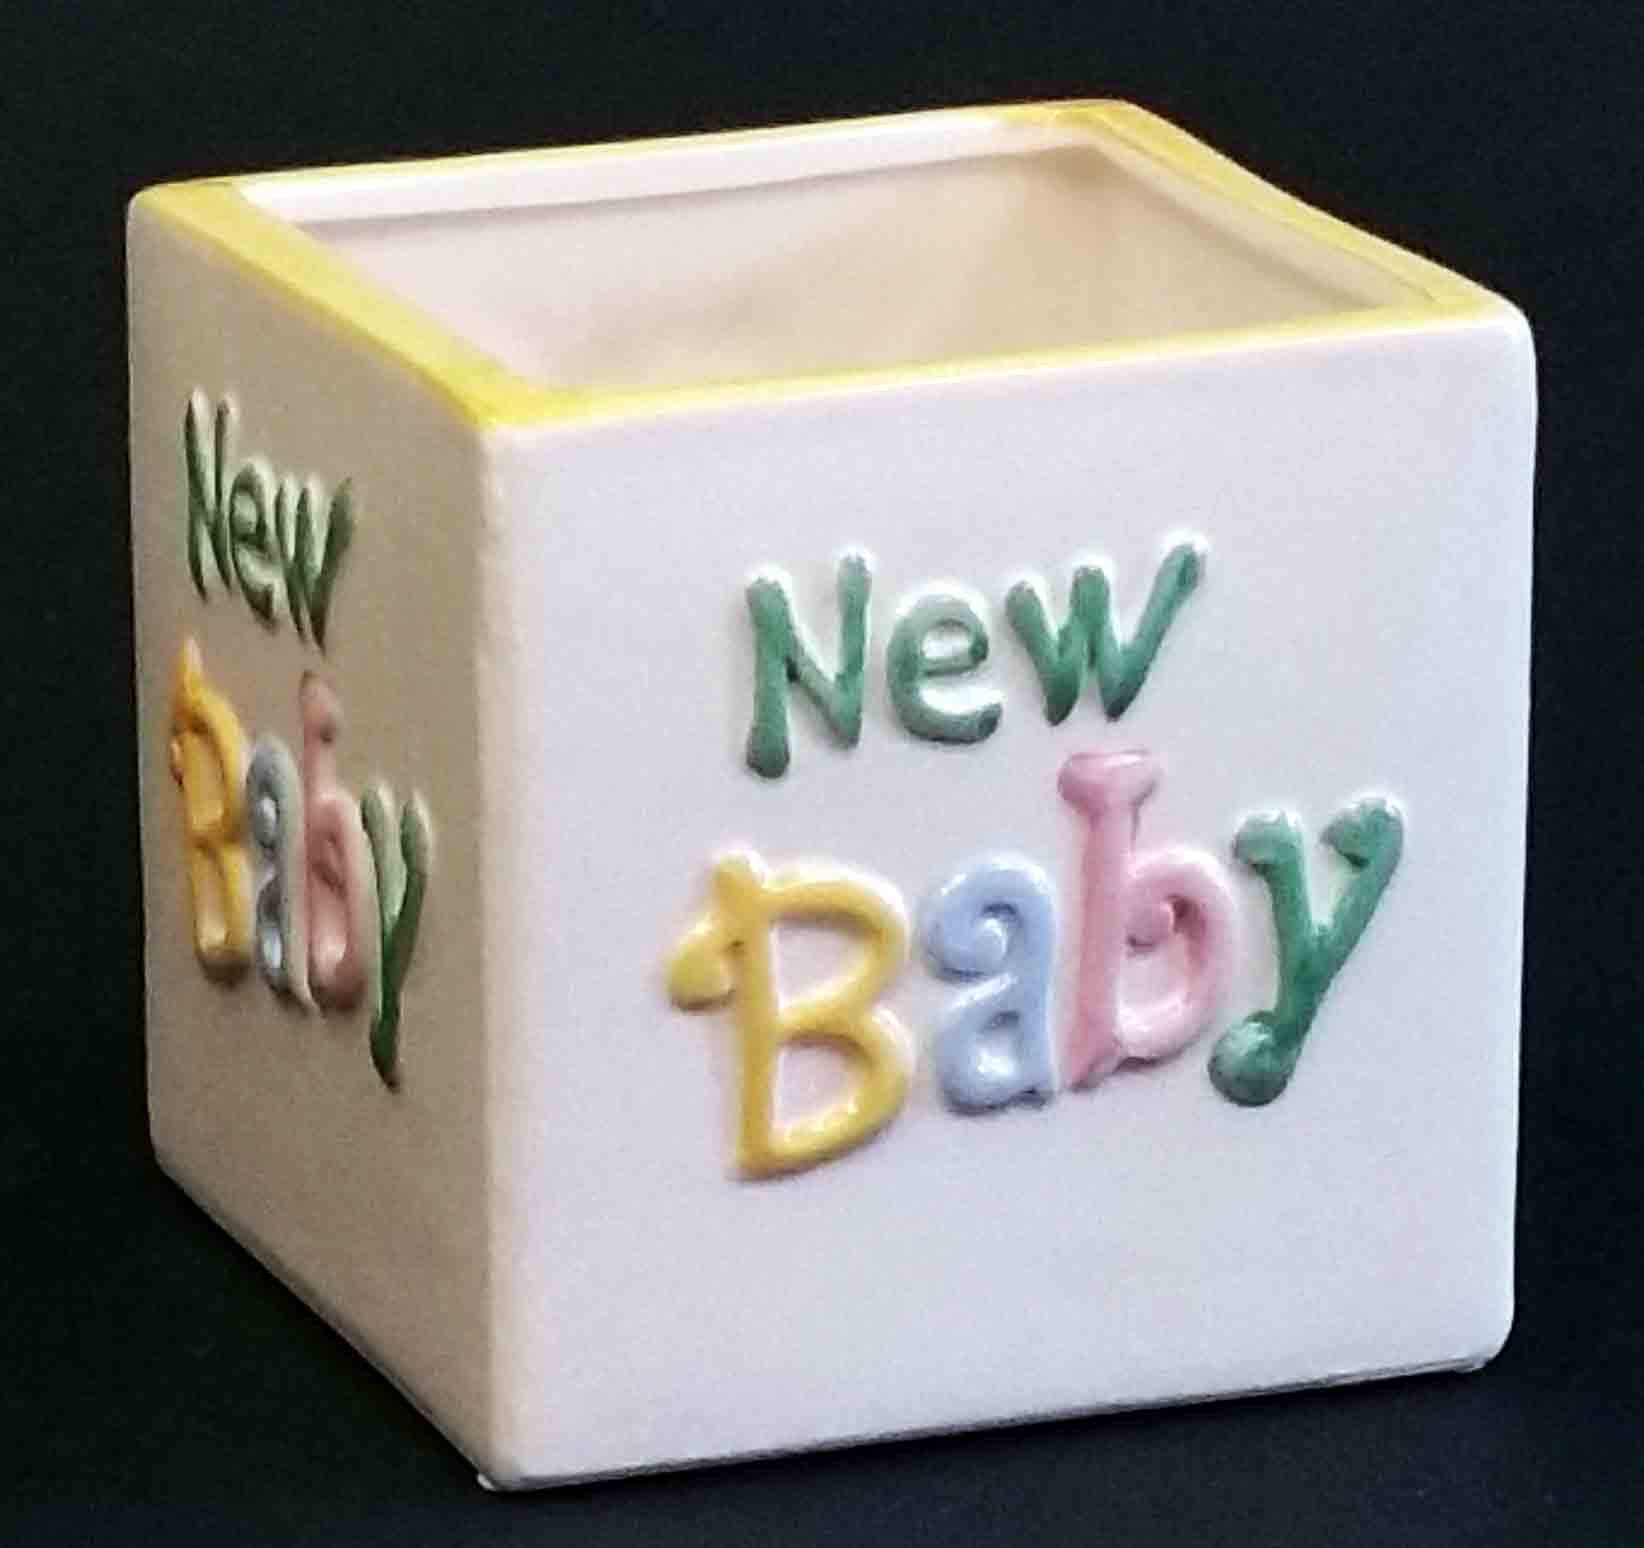 2555 - 5" New Baby Cube - 5.95 ea, 5.25/12